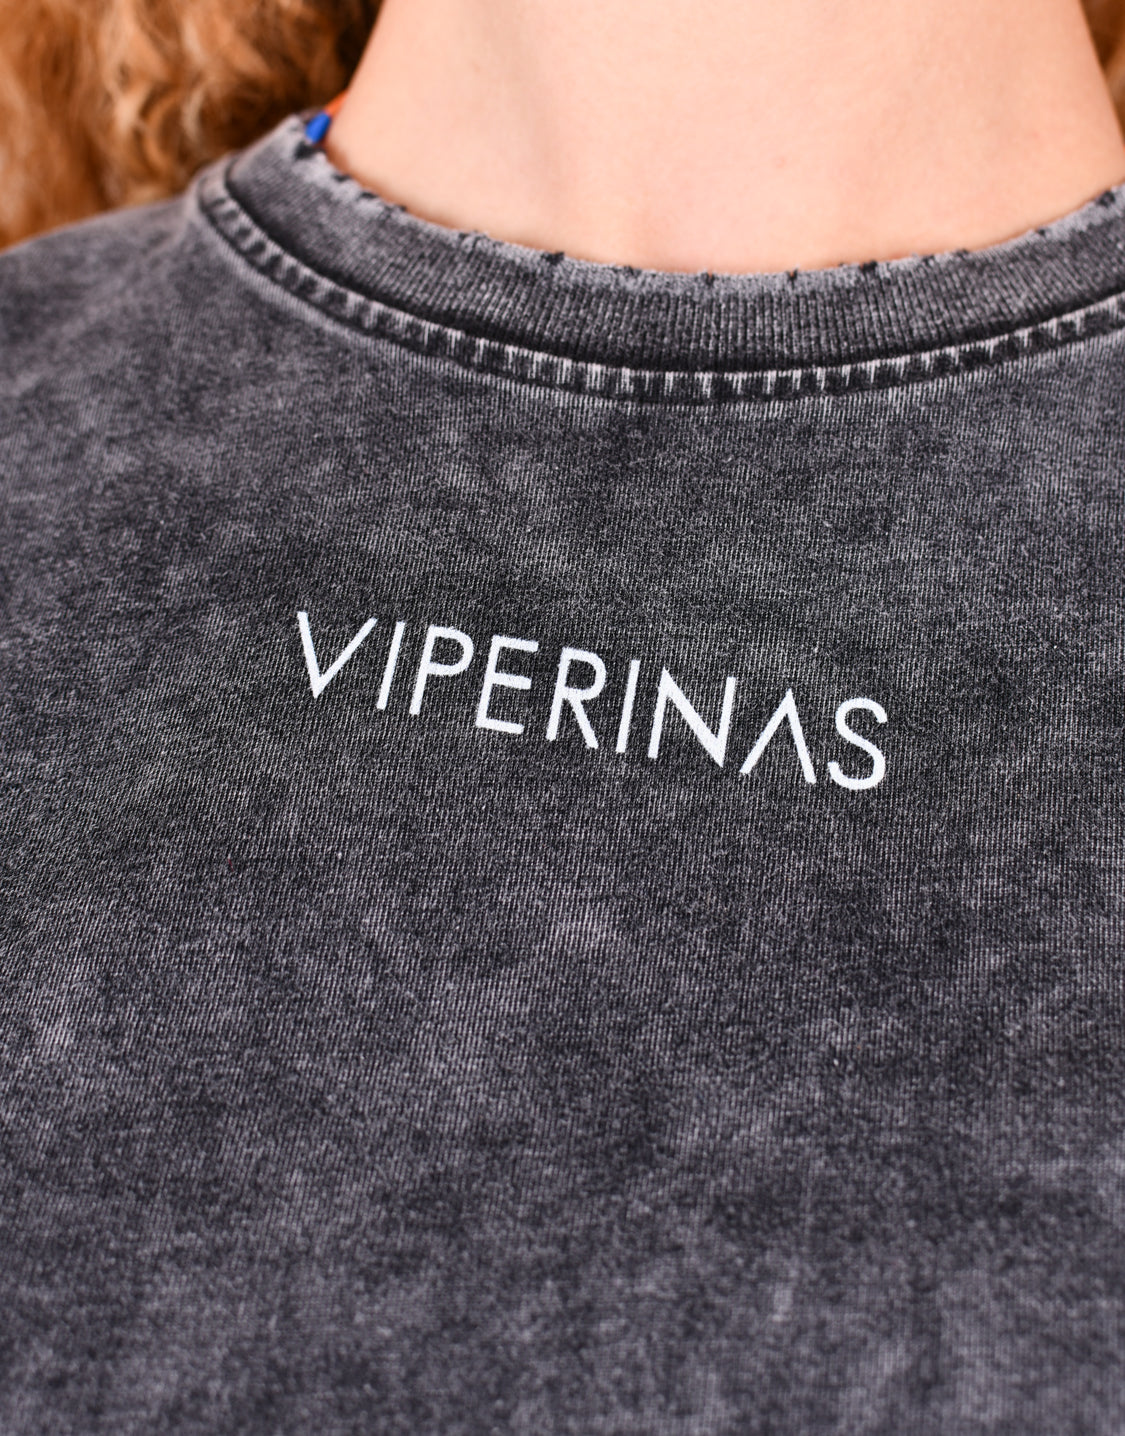 Tienda online mujer y unisex | Marca de moda Canaria | Viperinas Original Brand | Compra camisetas, tops, jeans, vestidos, totebags y próximamente moda de baño. Enviamos a Canarias y a todo el mundo